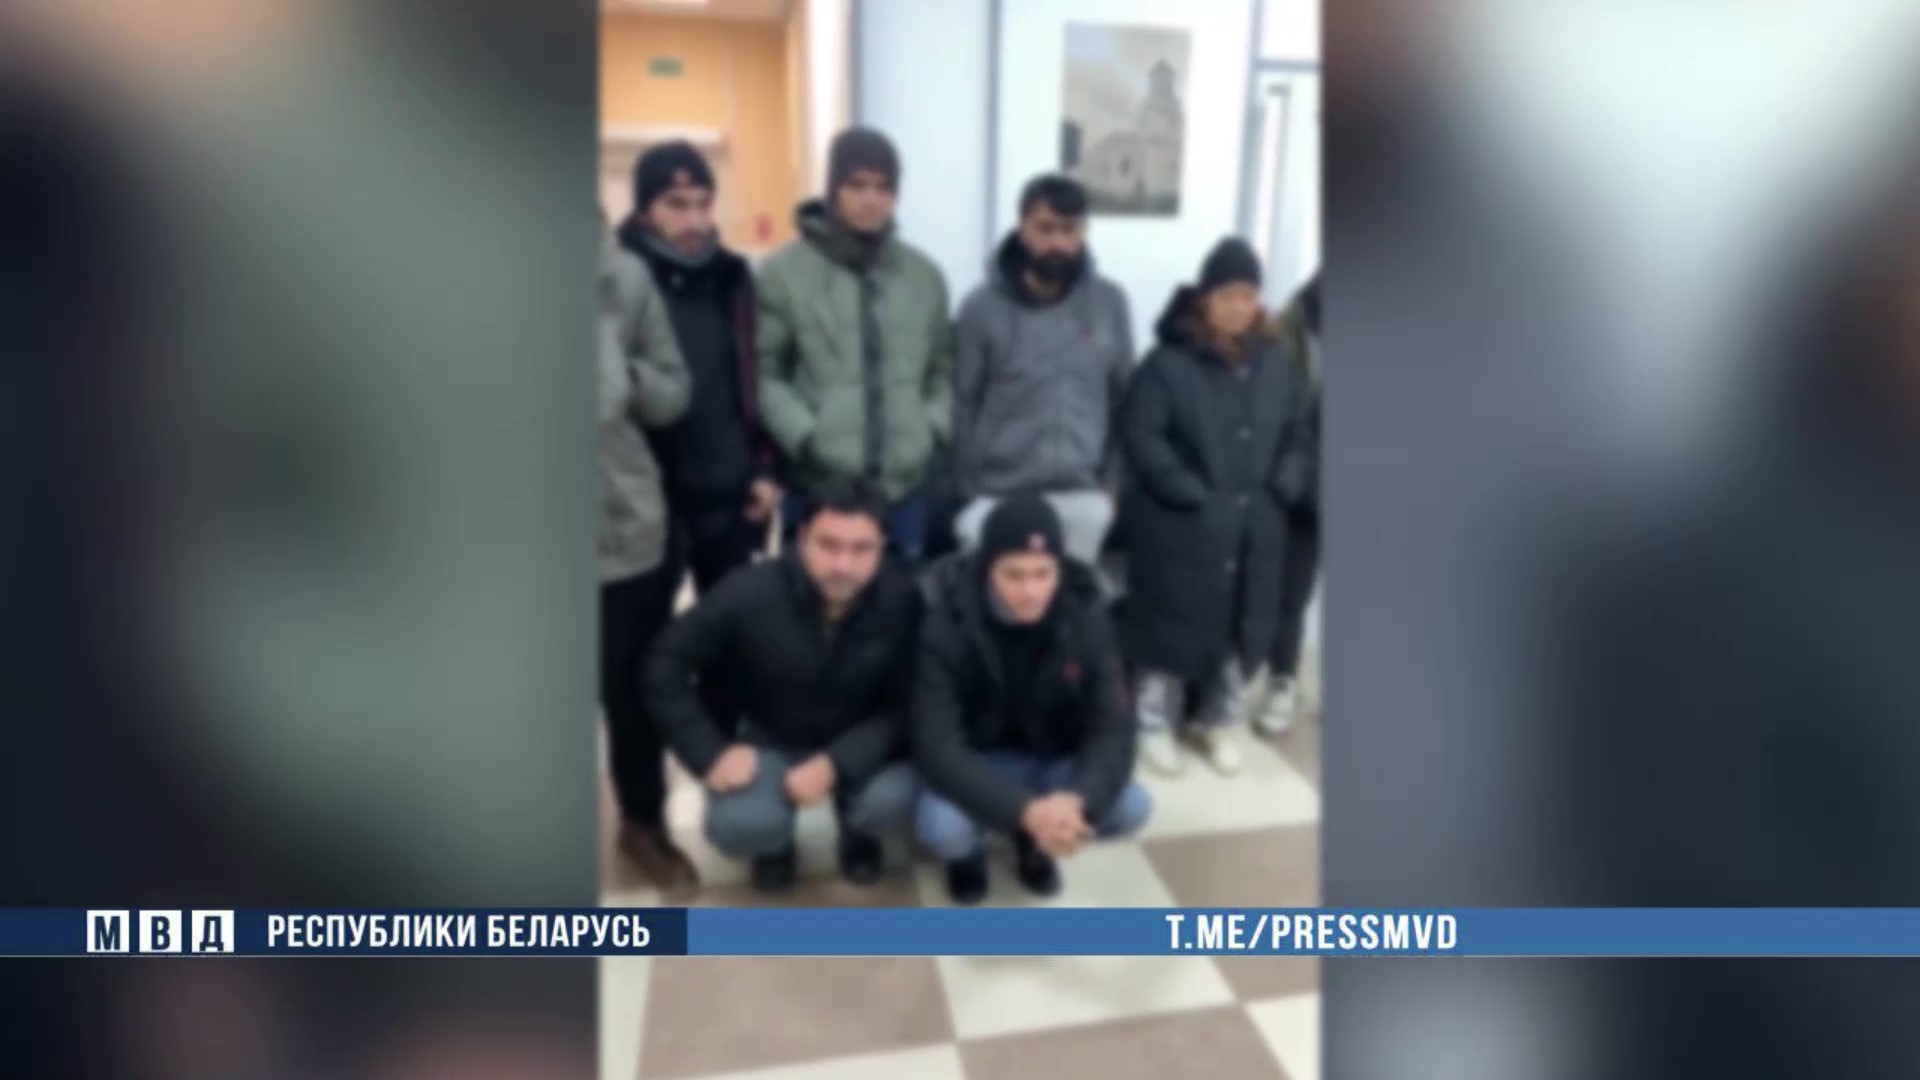 Группа мигрантов задержана в Колодищах под Минском